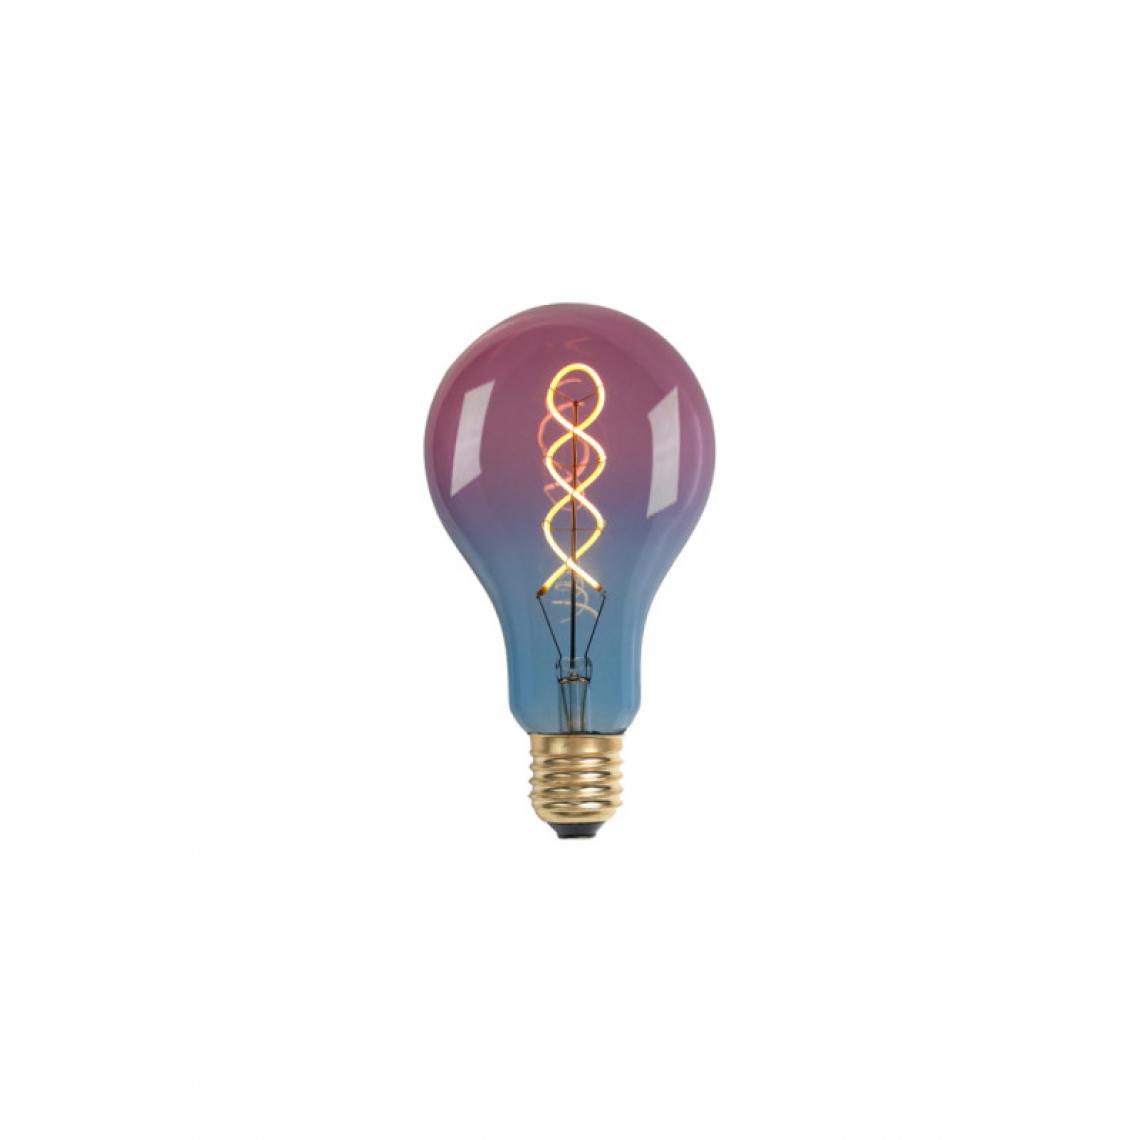 Xxcell - Ampoule LED décorative poire bleue-rose XXCELL - 4 W - 240 lumens - 3000 K - E27 - Ampoules LED